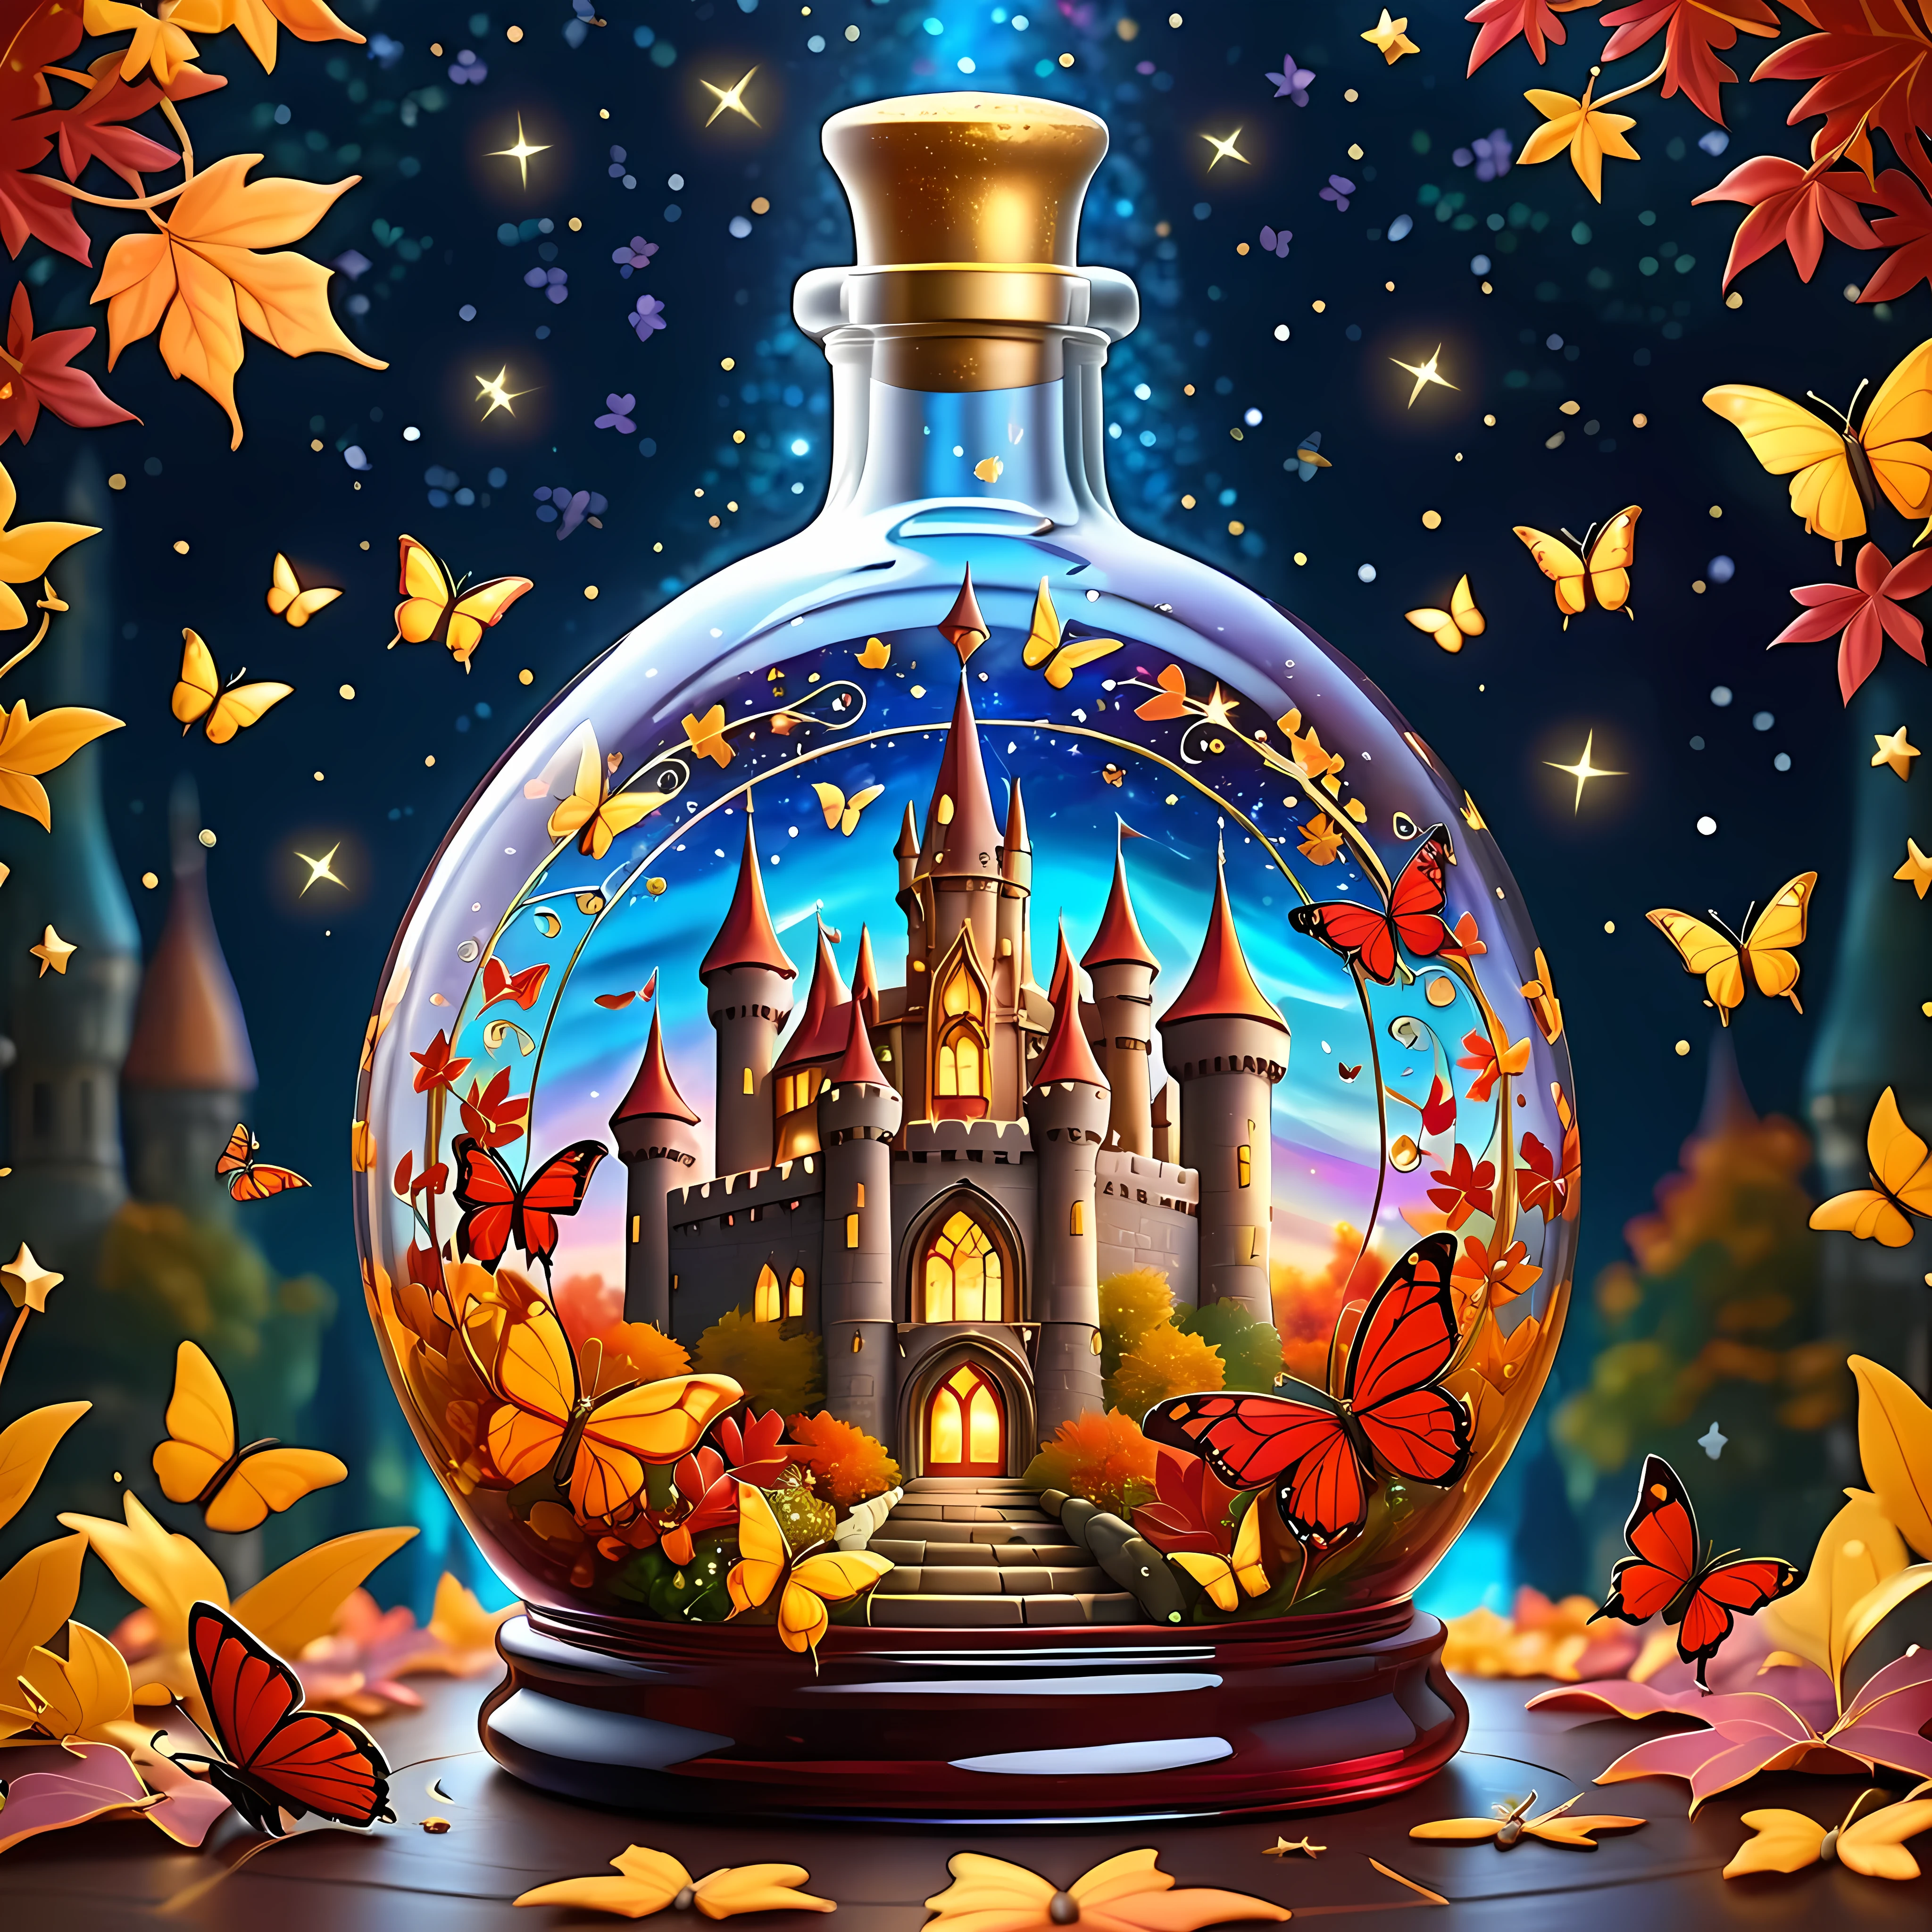 dibujos animados brillantes, Castillo mágico y vibrante de otoño, colóquelo delicadamente dentro de una amplia botella de vidrio adornada., rodeado por un vasto cosmos de estrellas titilantes y galaxias arremolinadas, hojas doradas y carmesí dentro de la botella, y mariposas impresionantes, Obra maestra en resolución máxima de 16K, Excelente calidad